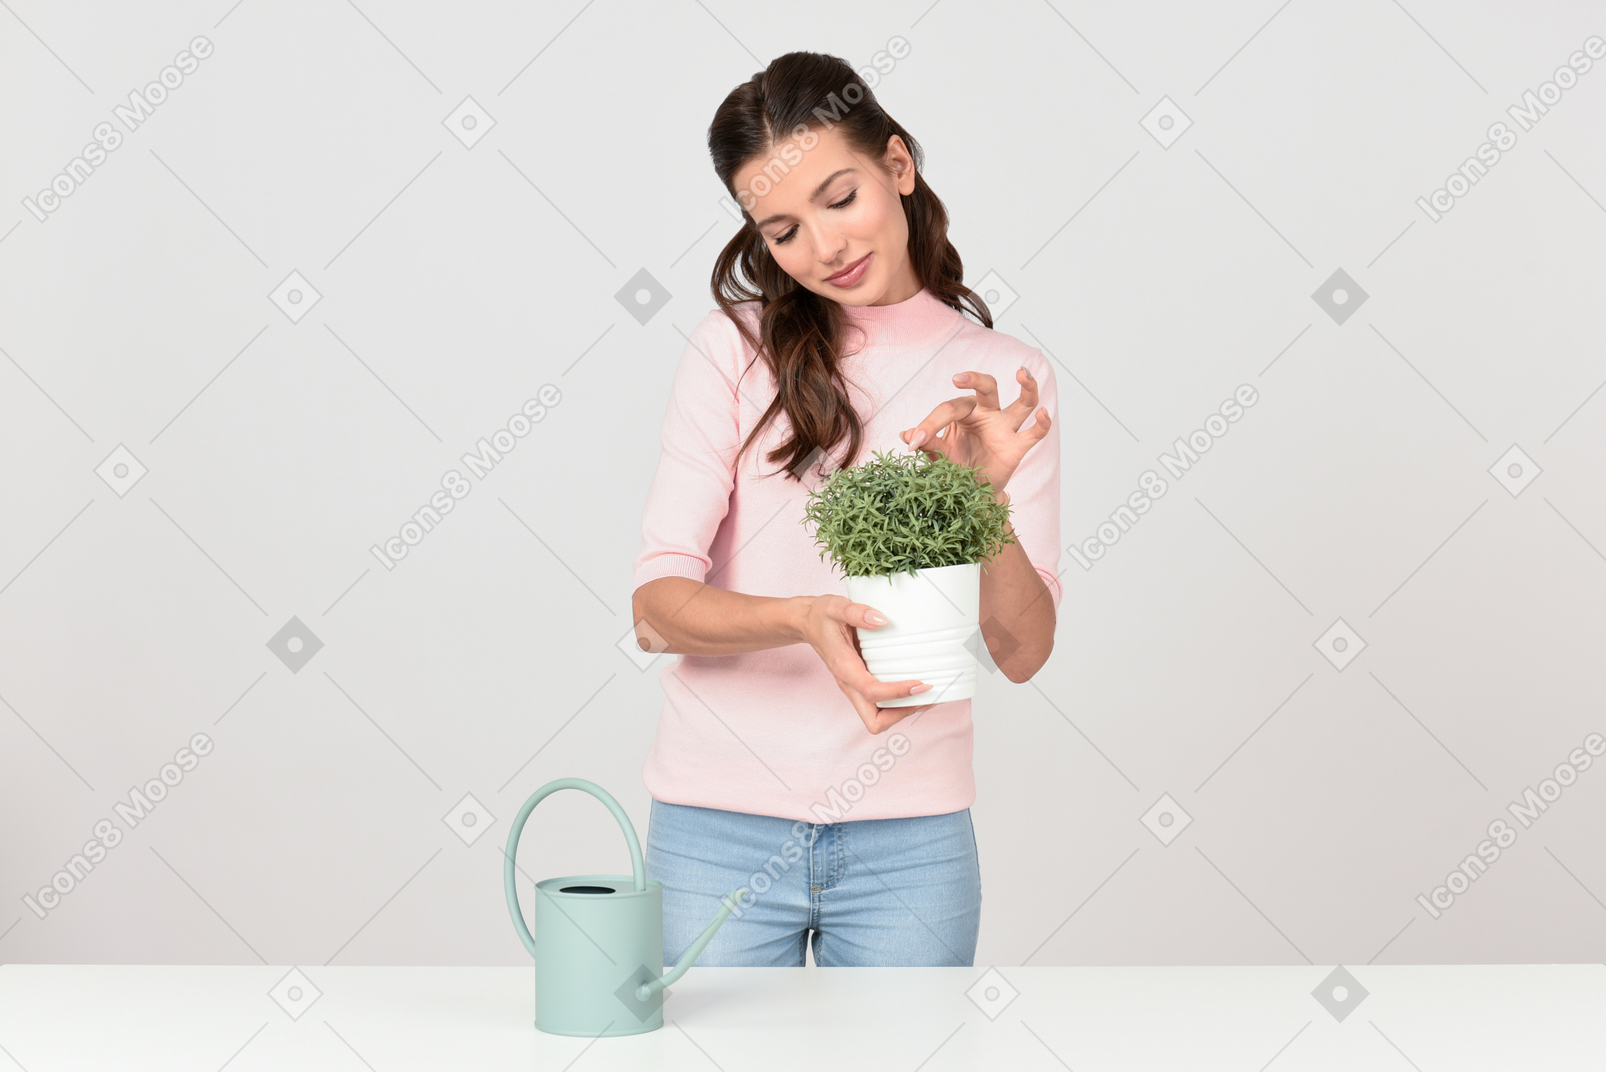 Atractiva joven cuidando una planta de interior.